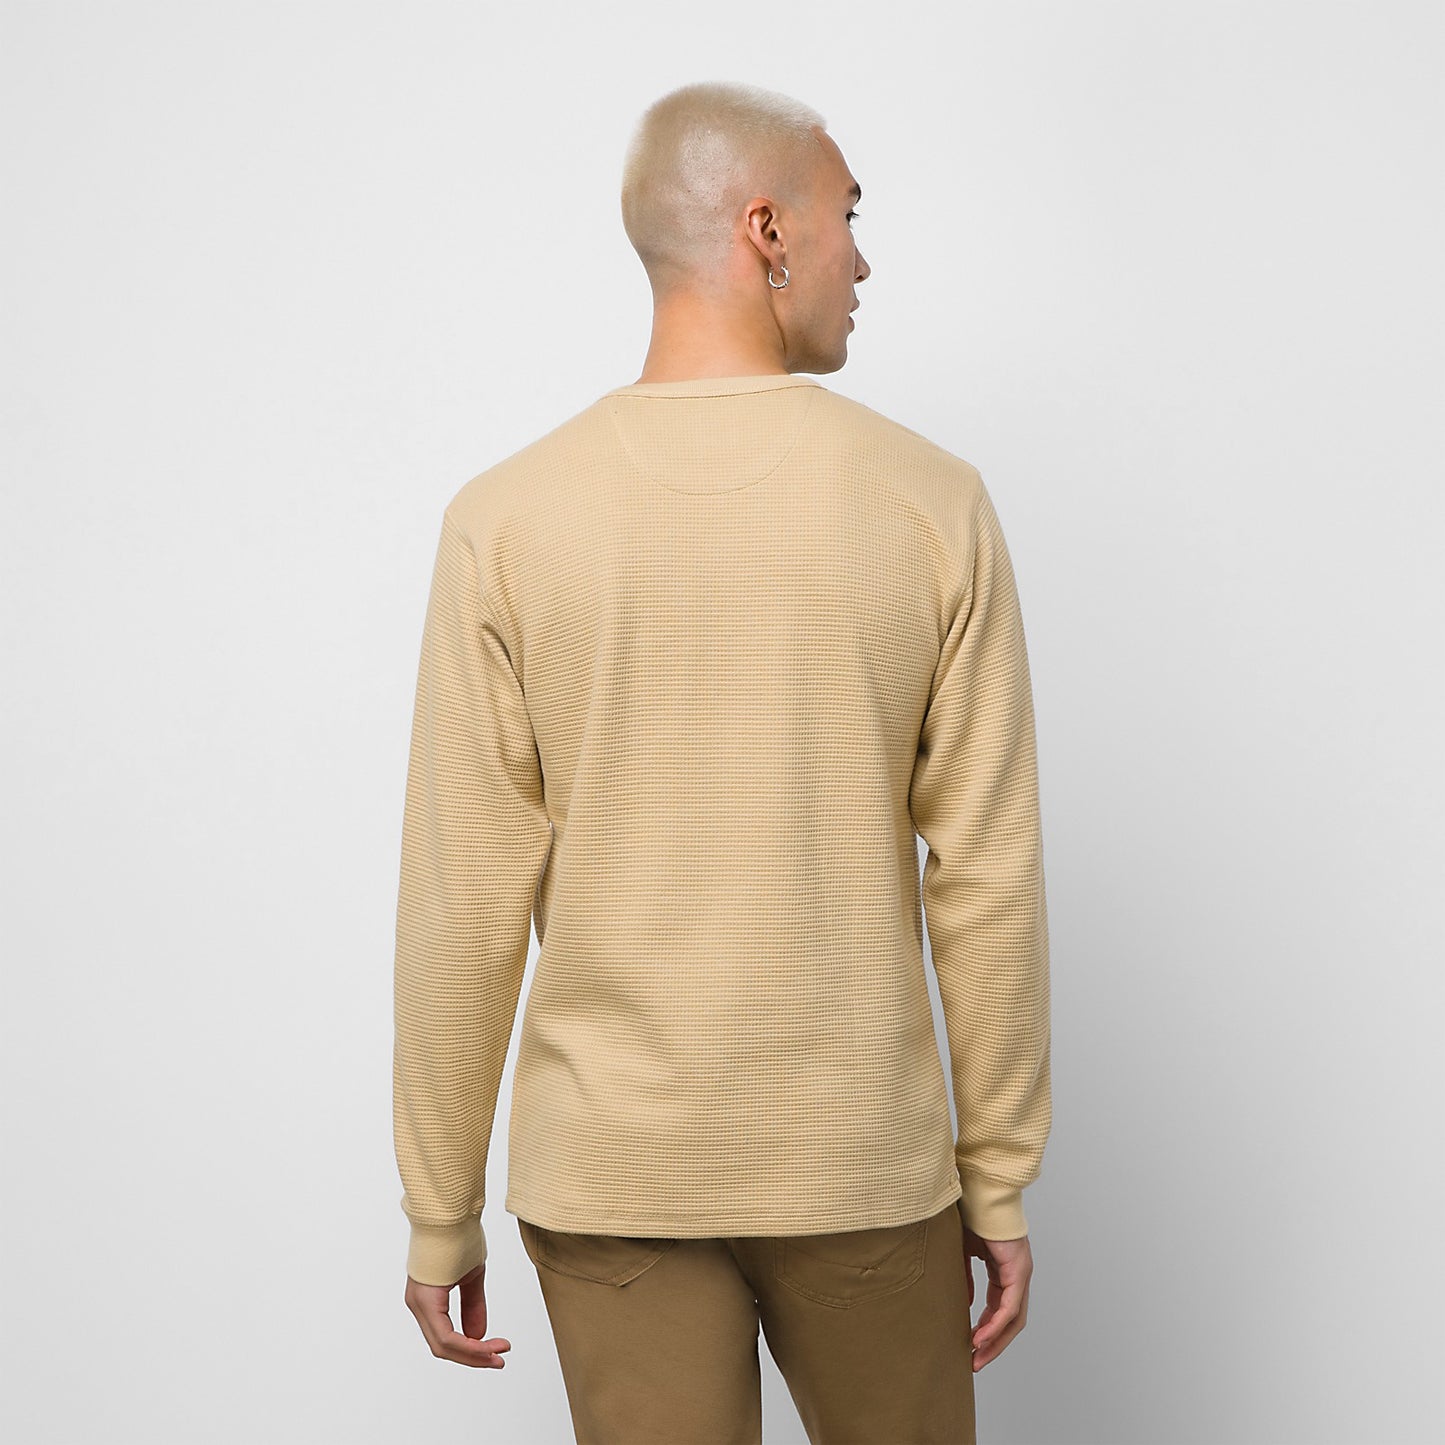 Vans Men's Alder Long Sleeve Pocket Knit Thermal, Brown